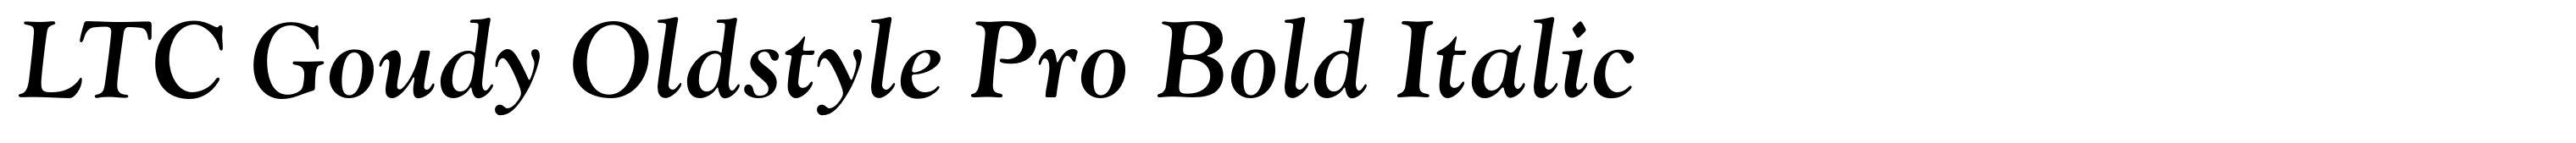 LTC Goudy Oldstyle Pro Bold Italic